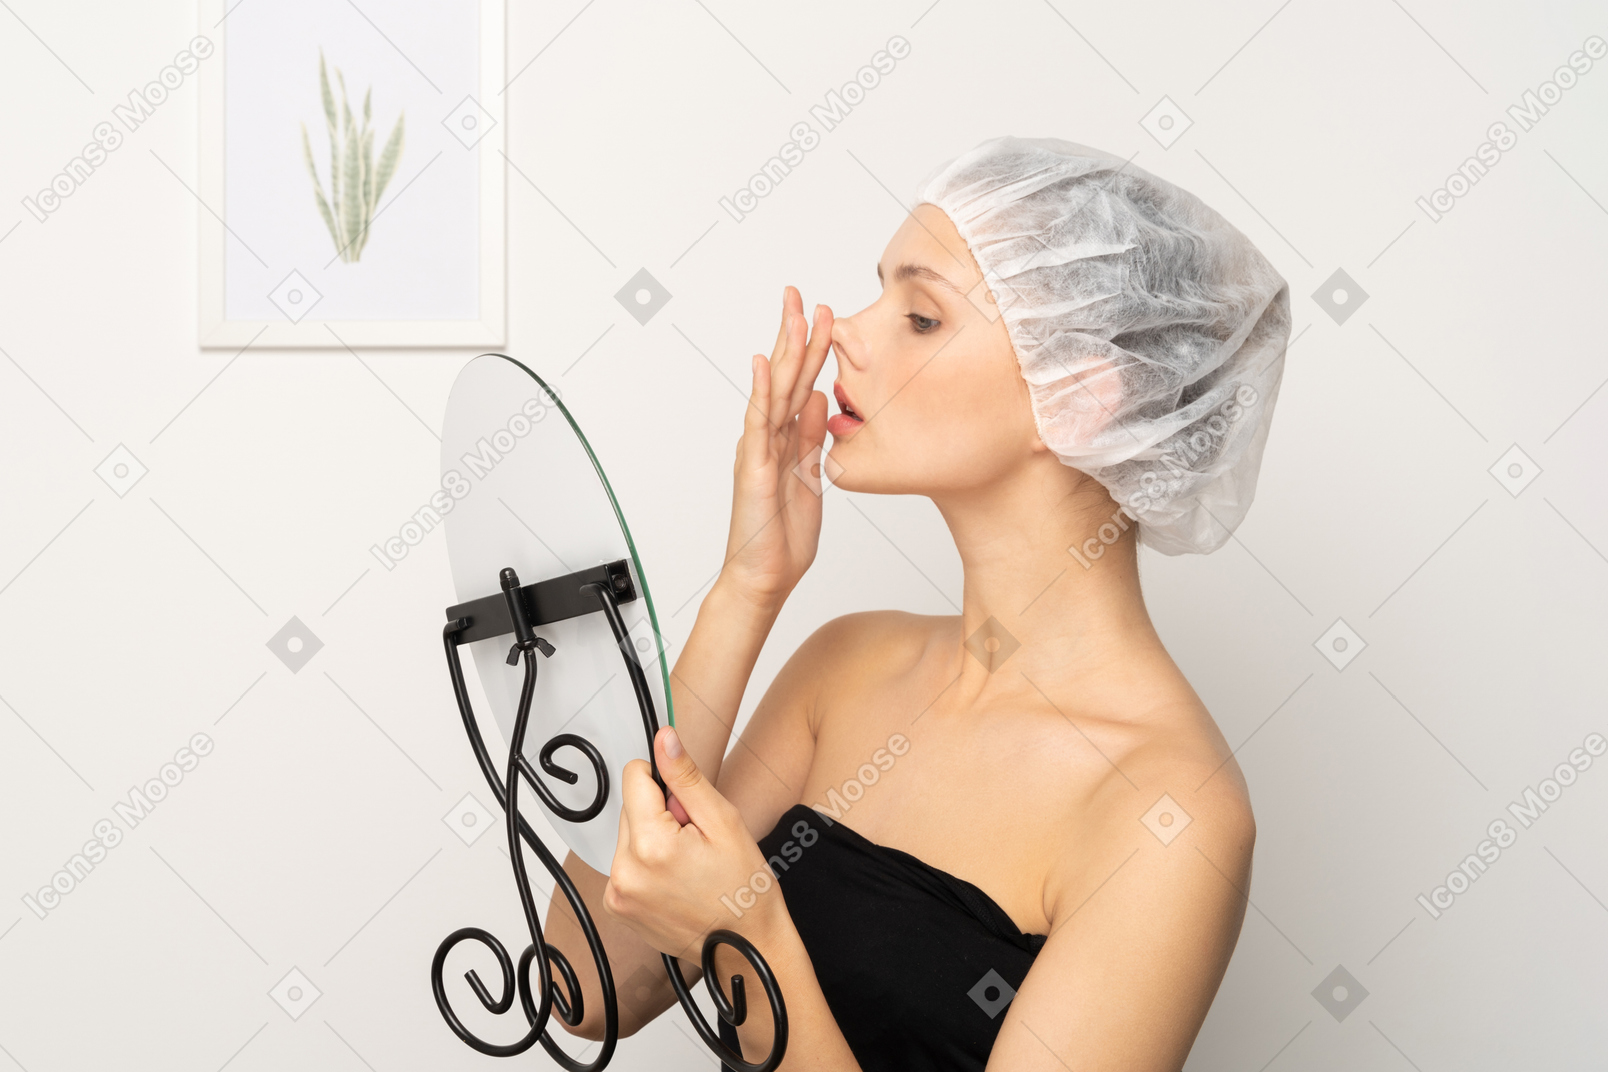 거울을 보면서 코를 들어올리는 의료 모자를 쓴 젊은 여성